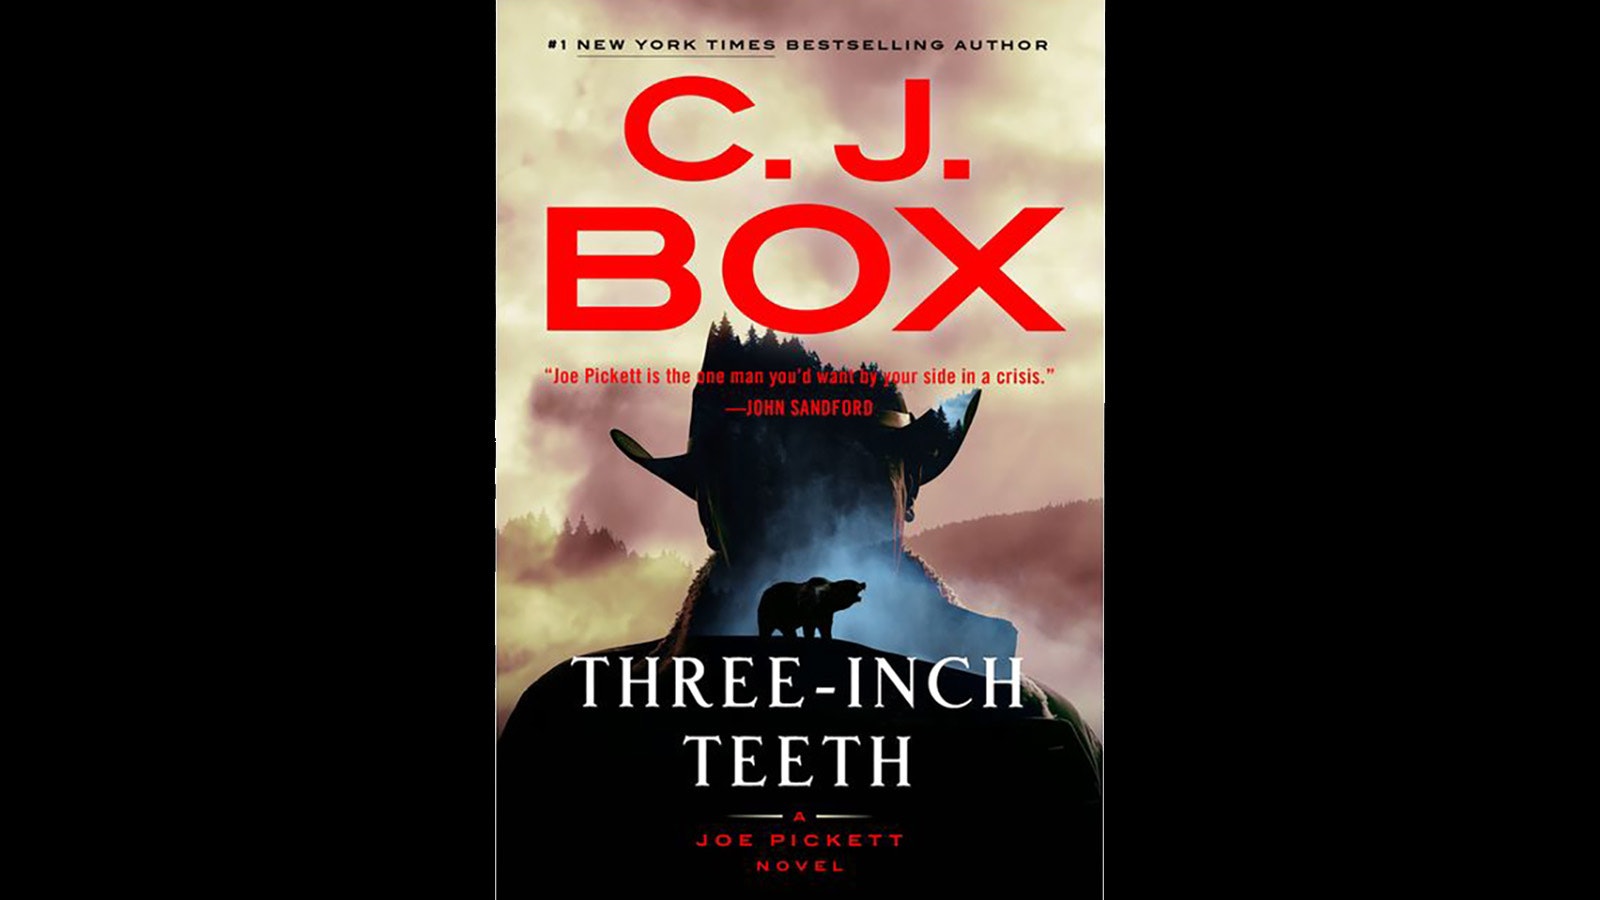 CJ Box Three inch teeth